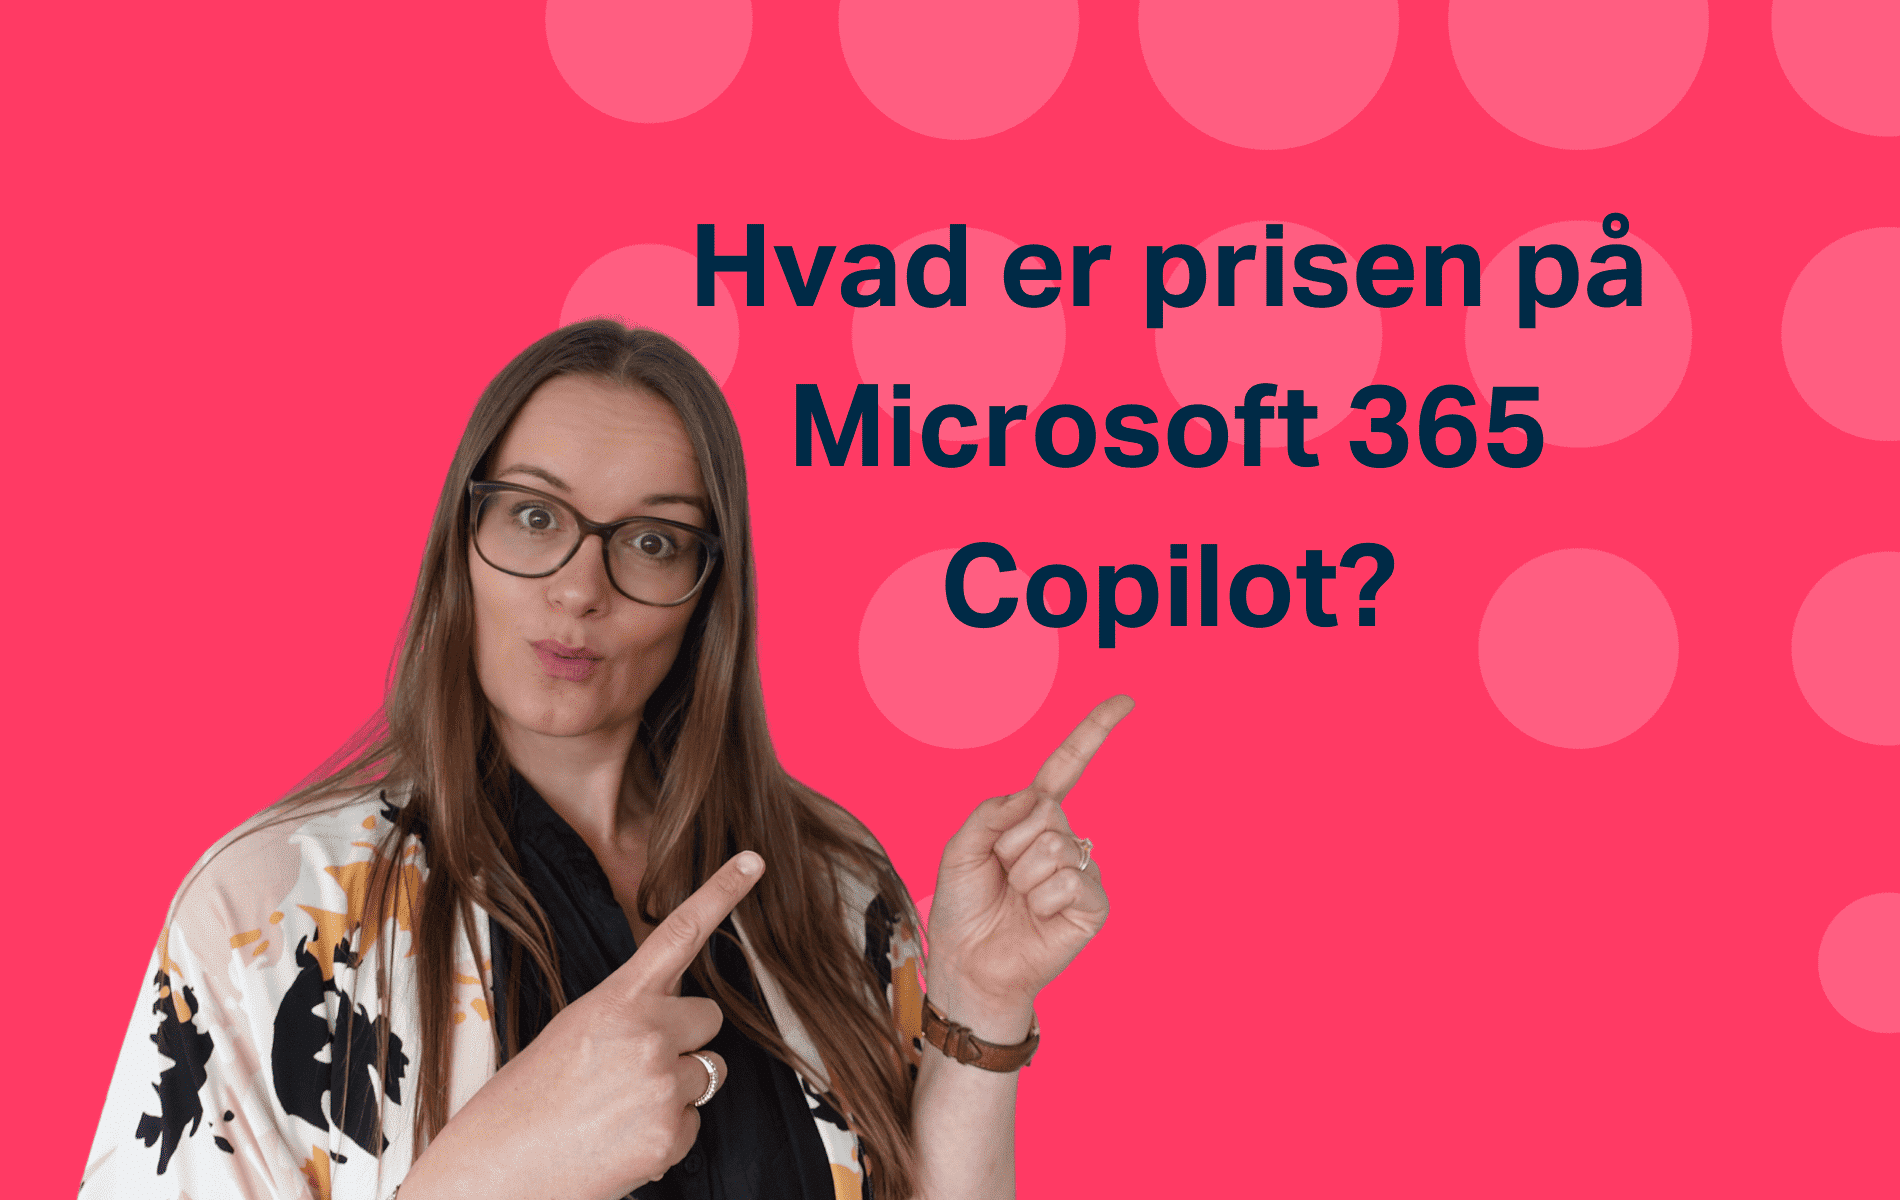 Hvad er prisen på Microsoft 365 Copilot